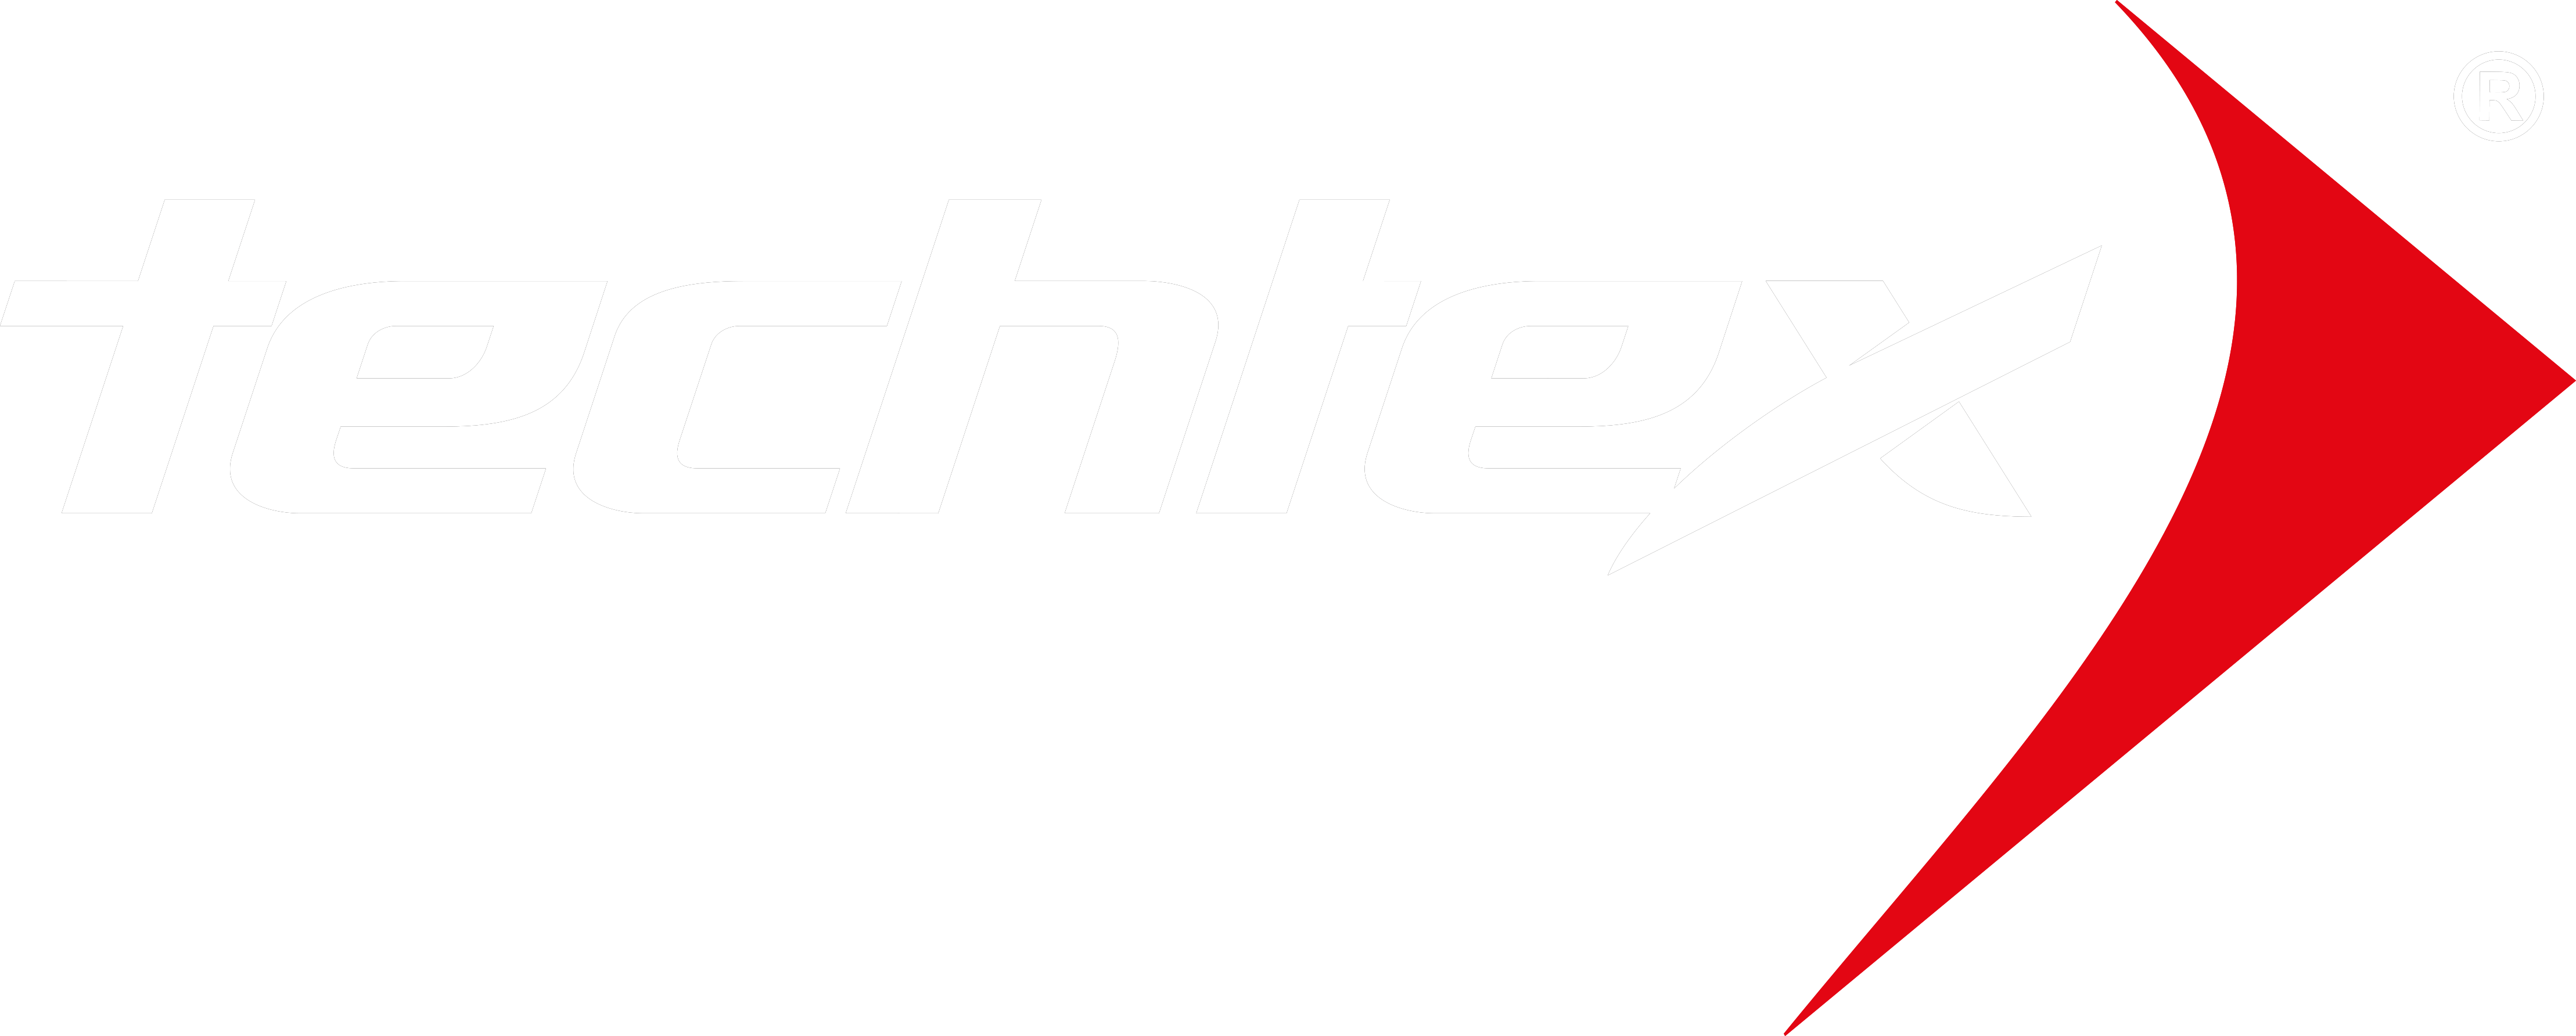 Techtex